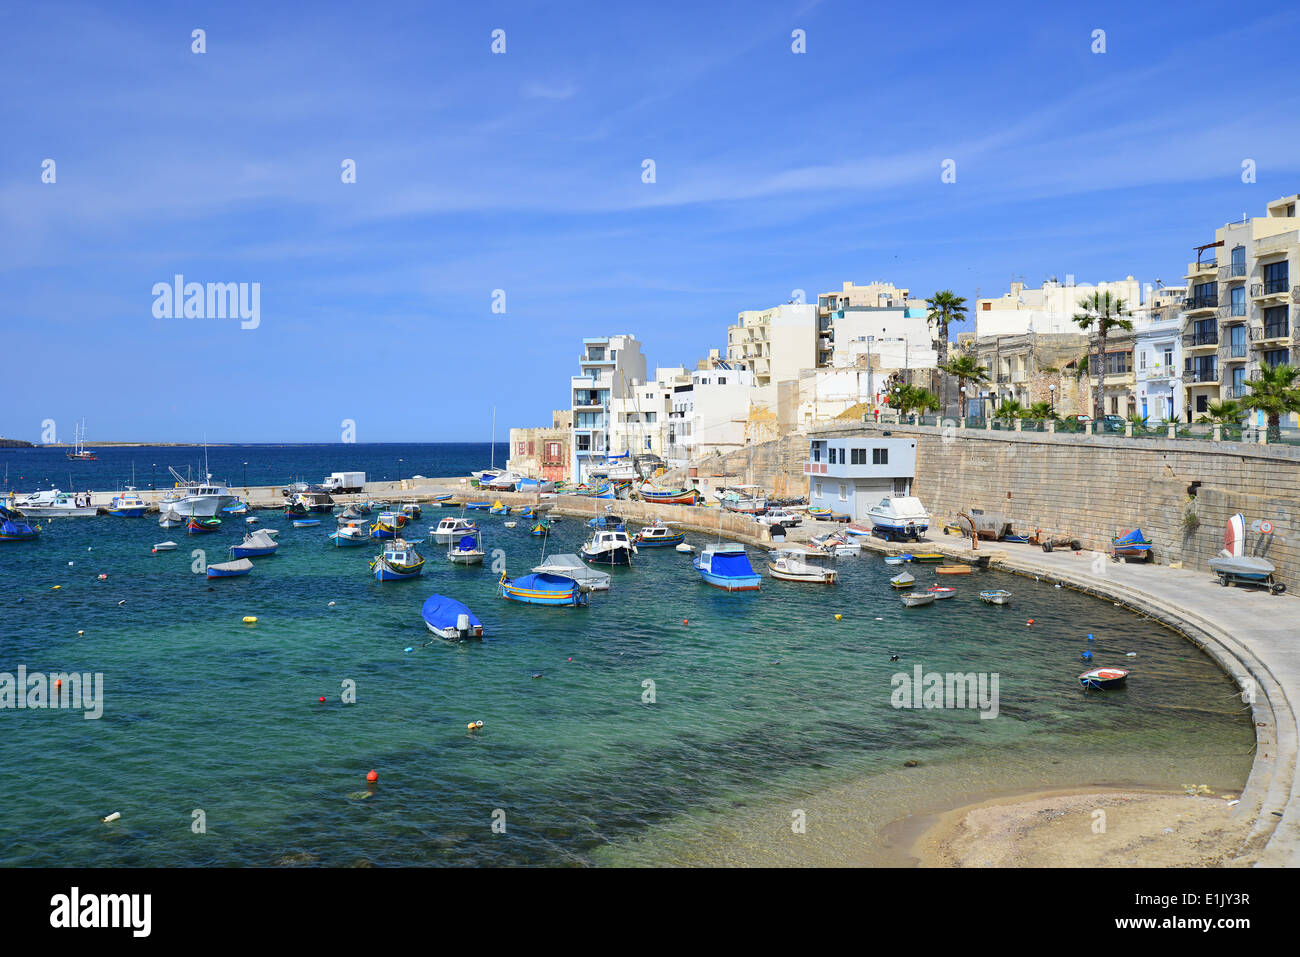 Vue sur le port, Ghan Rasul, Saint Paul's Bay (San Pawl), District Nord, Malte Majjistral Région, République de Malte Banque D'Images